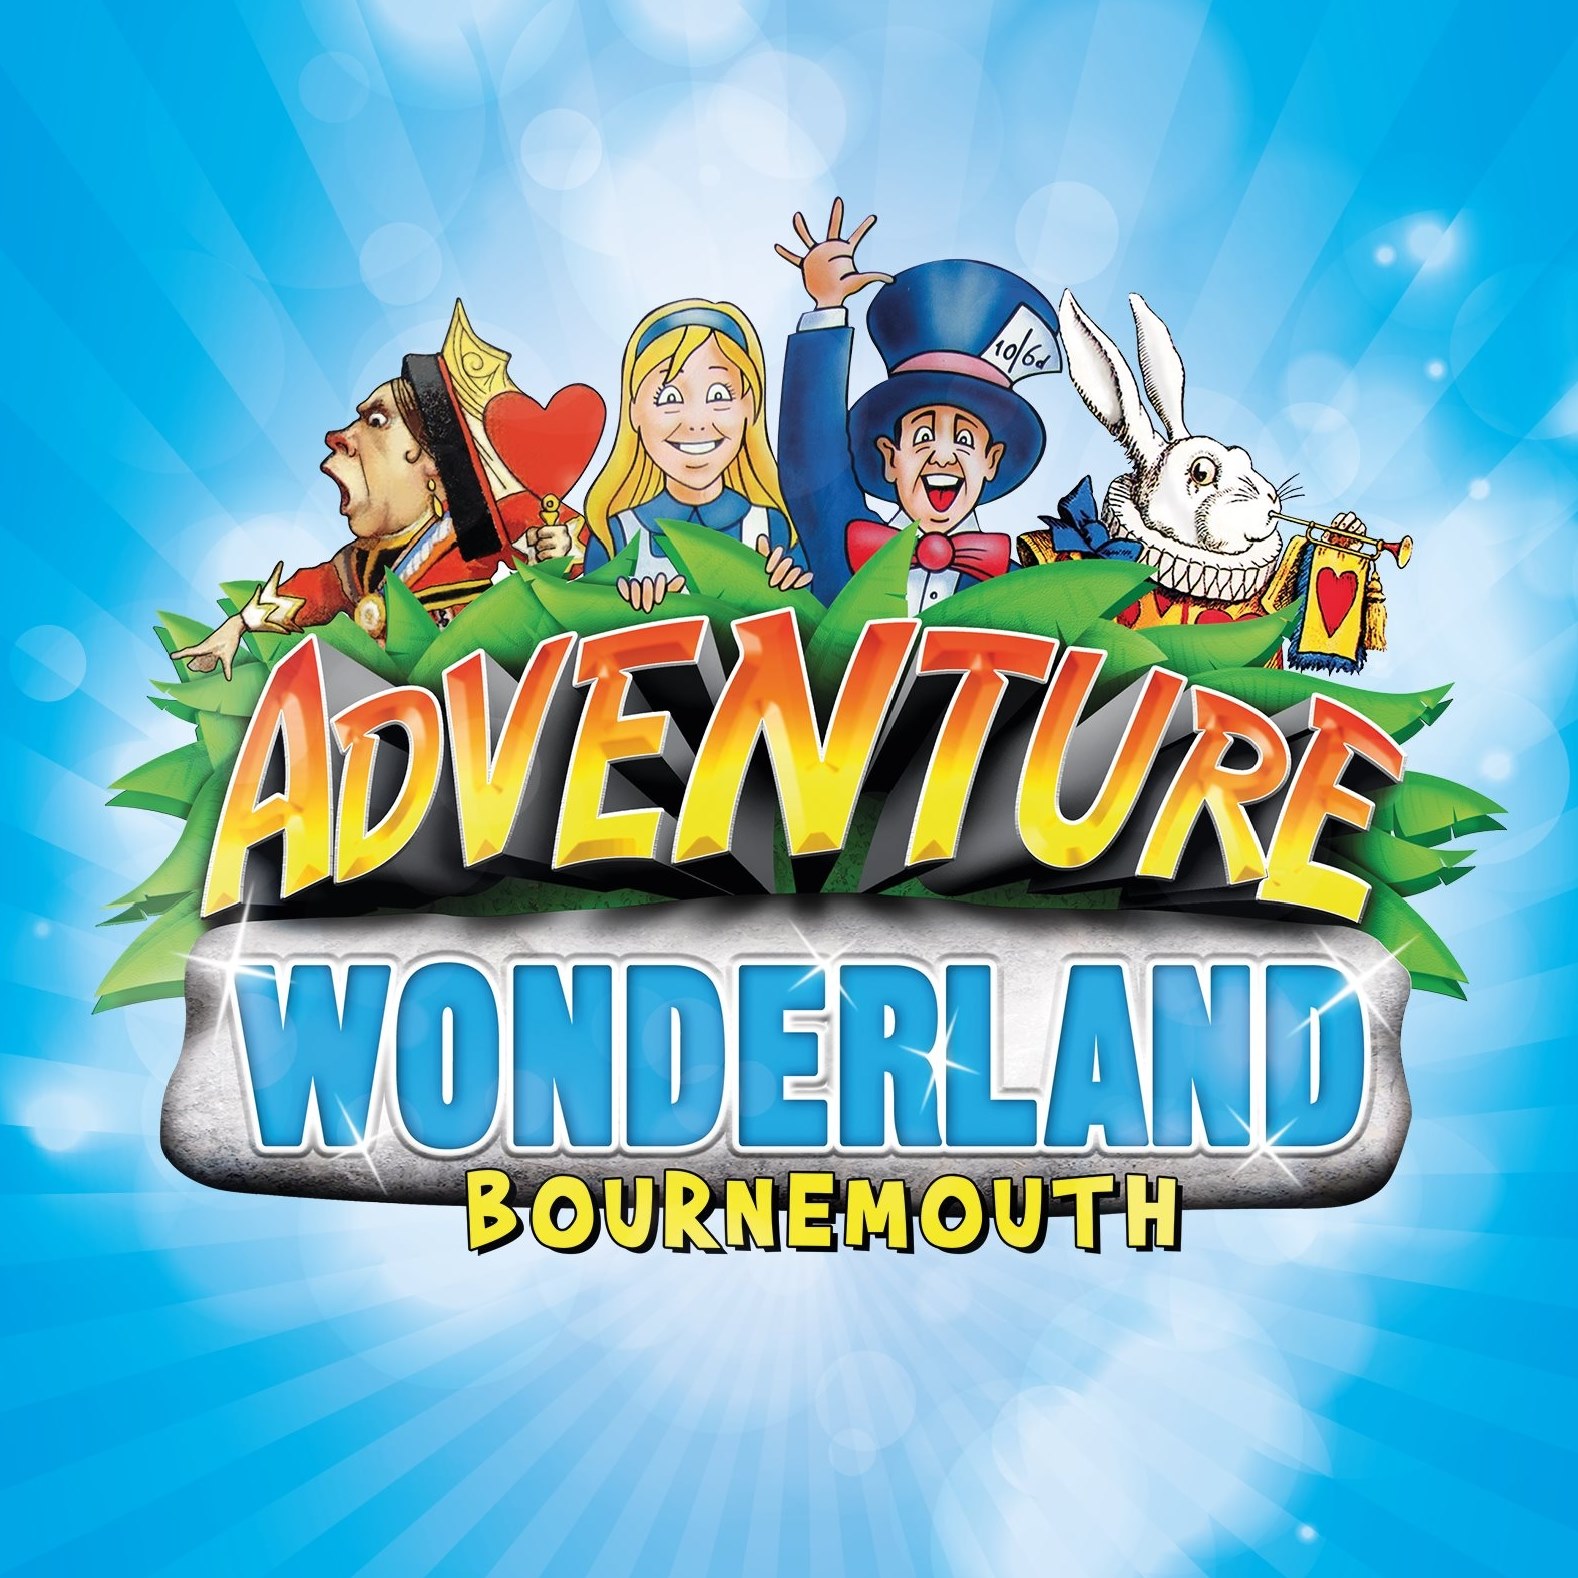 Adventure Wonderland Bournemouth